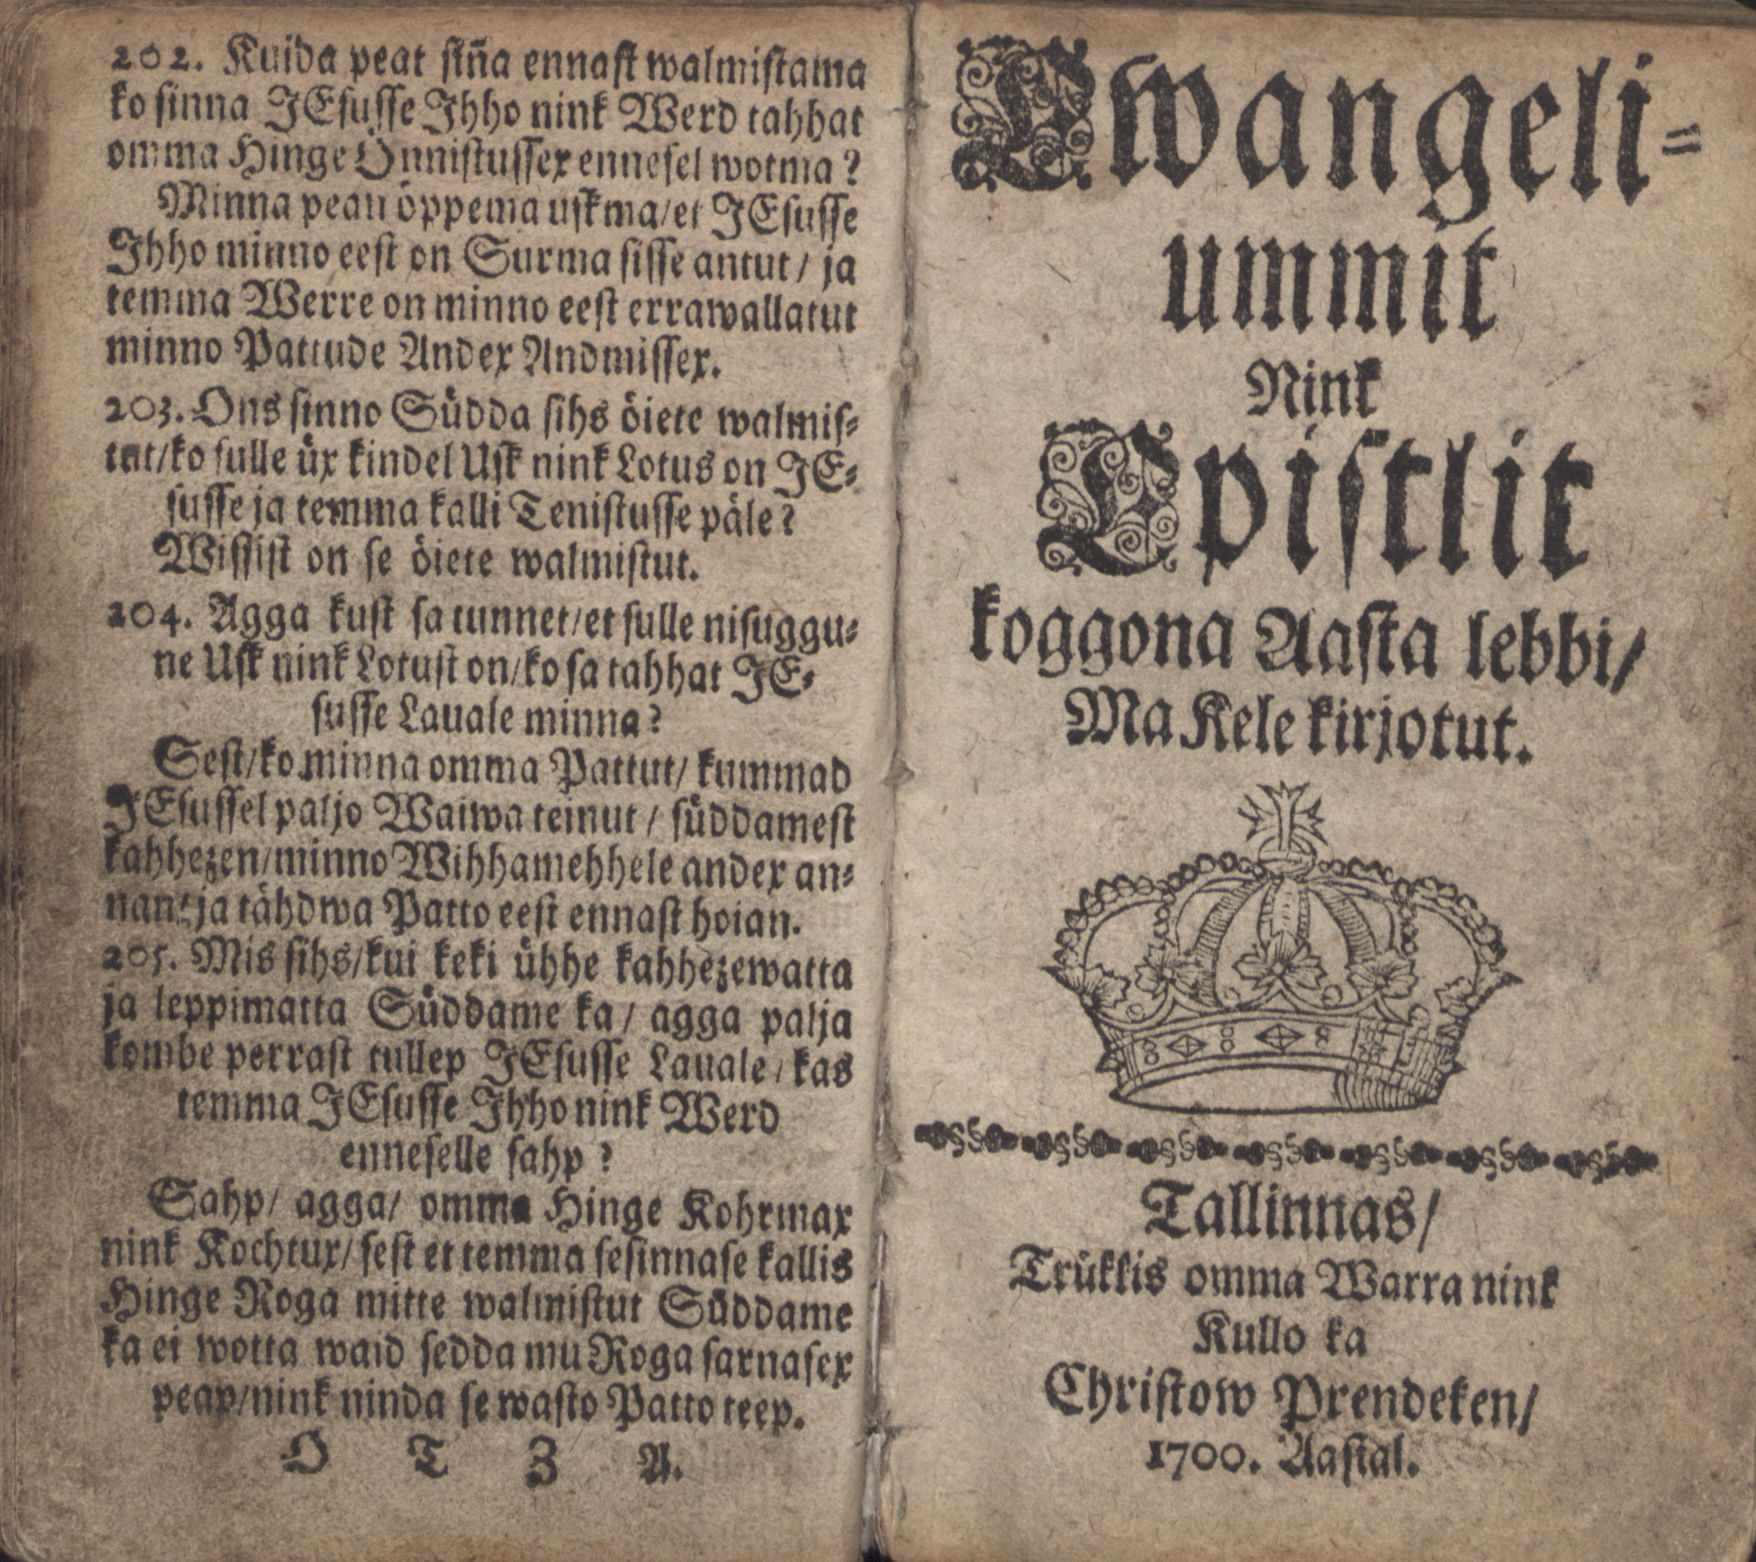 Ewangeliummit Nink Epistlit (1700) | 1. Title page